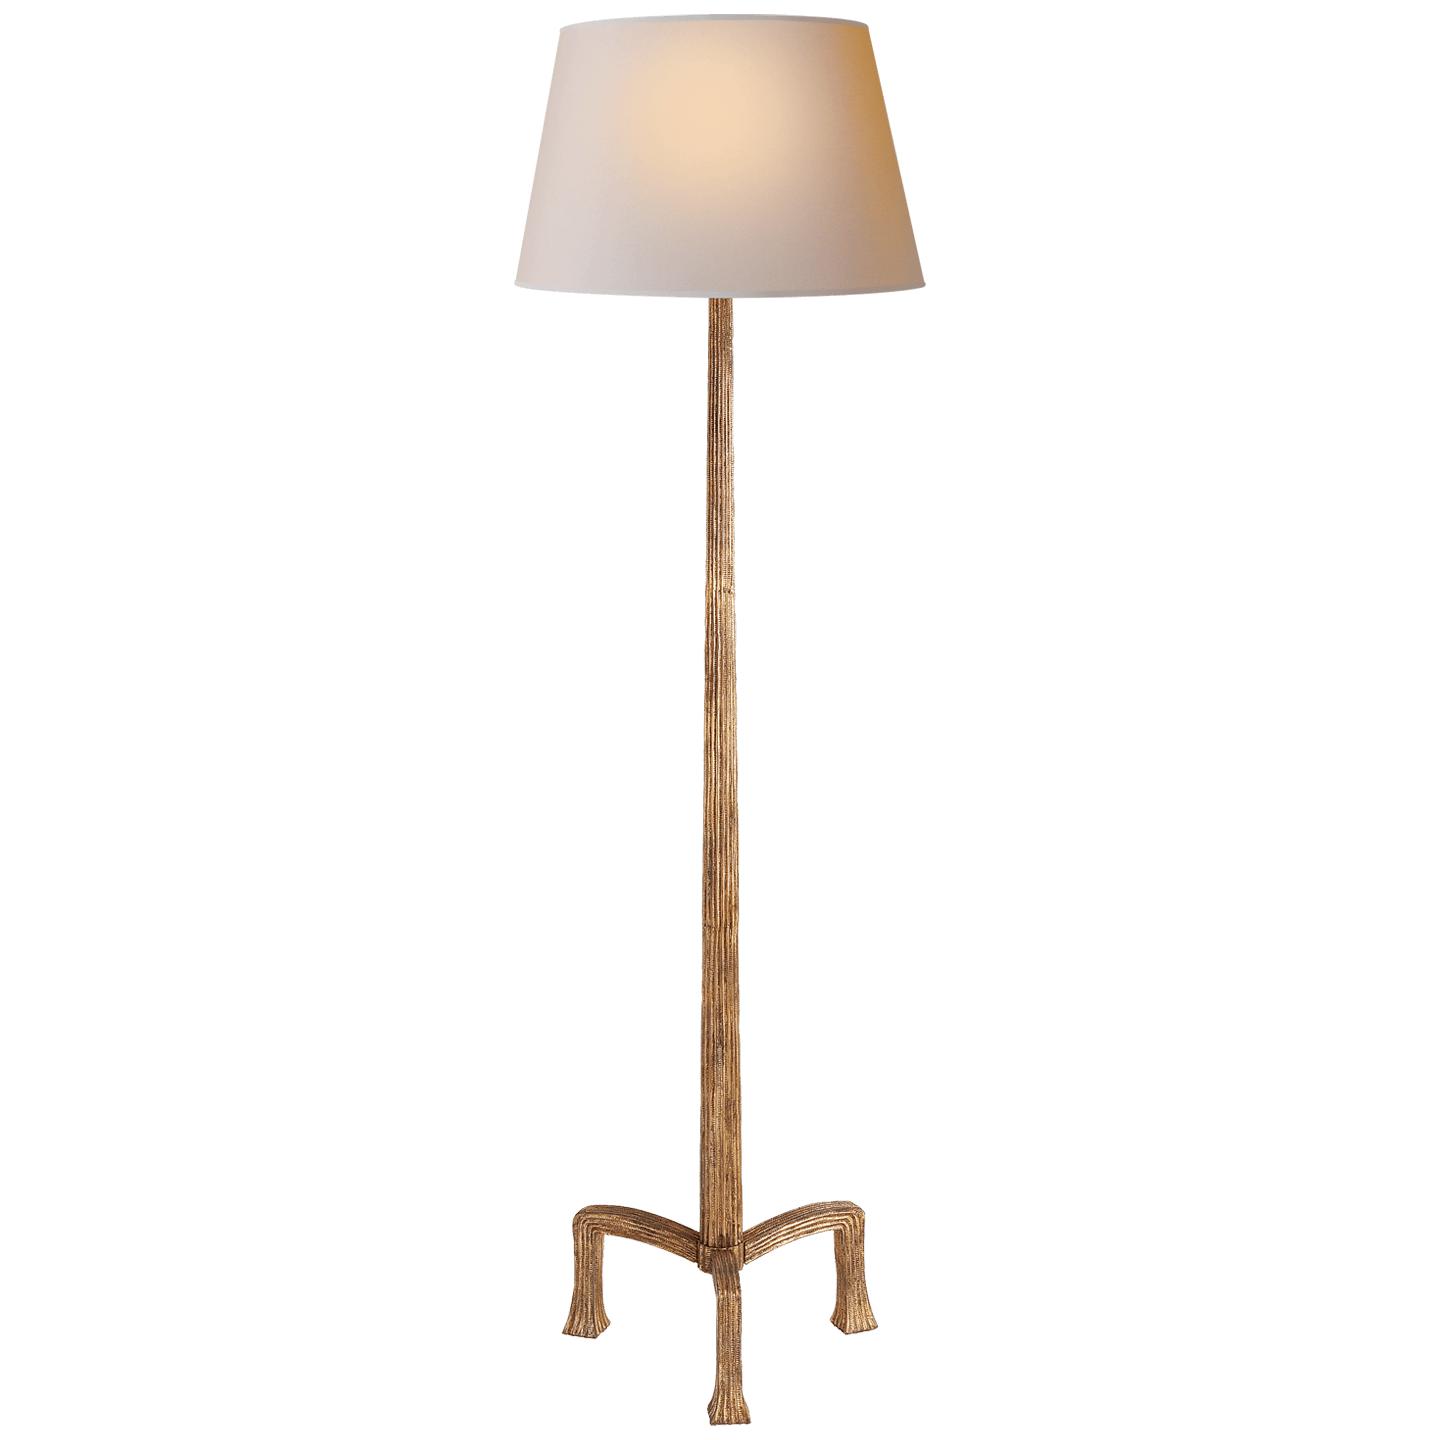 Купить Торшер Strie Floor Lamp в интернет-магазине roooms.ru